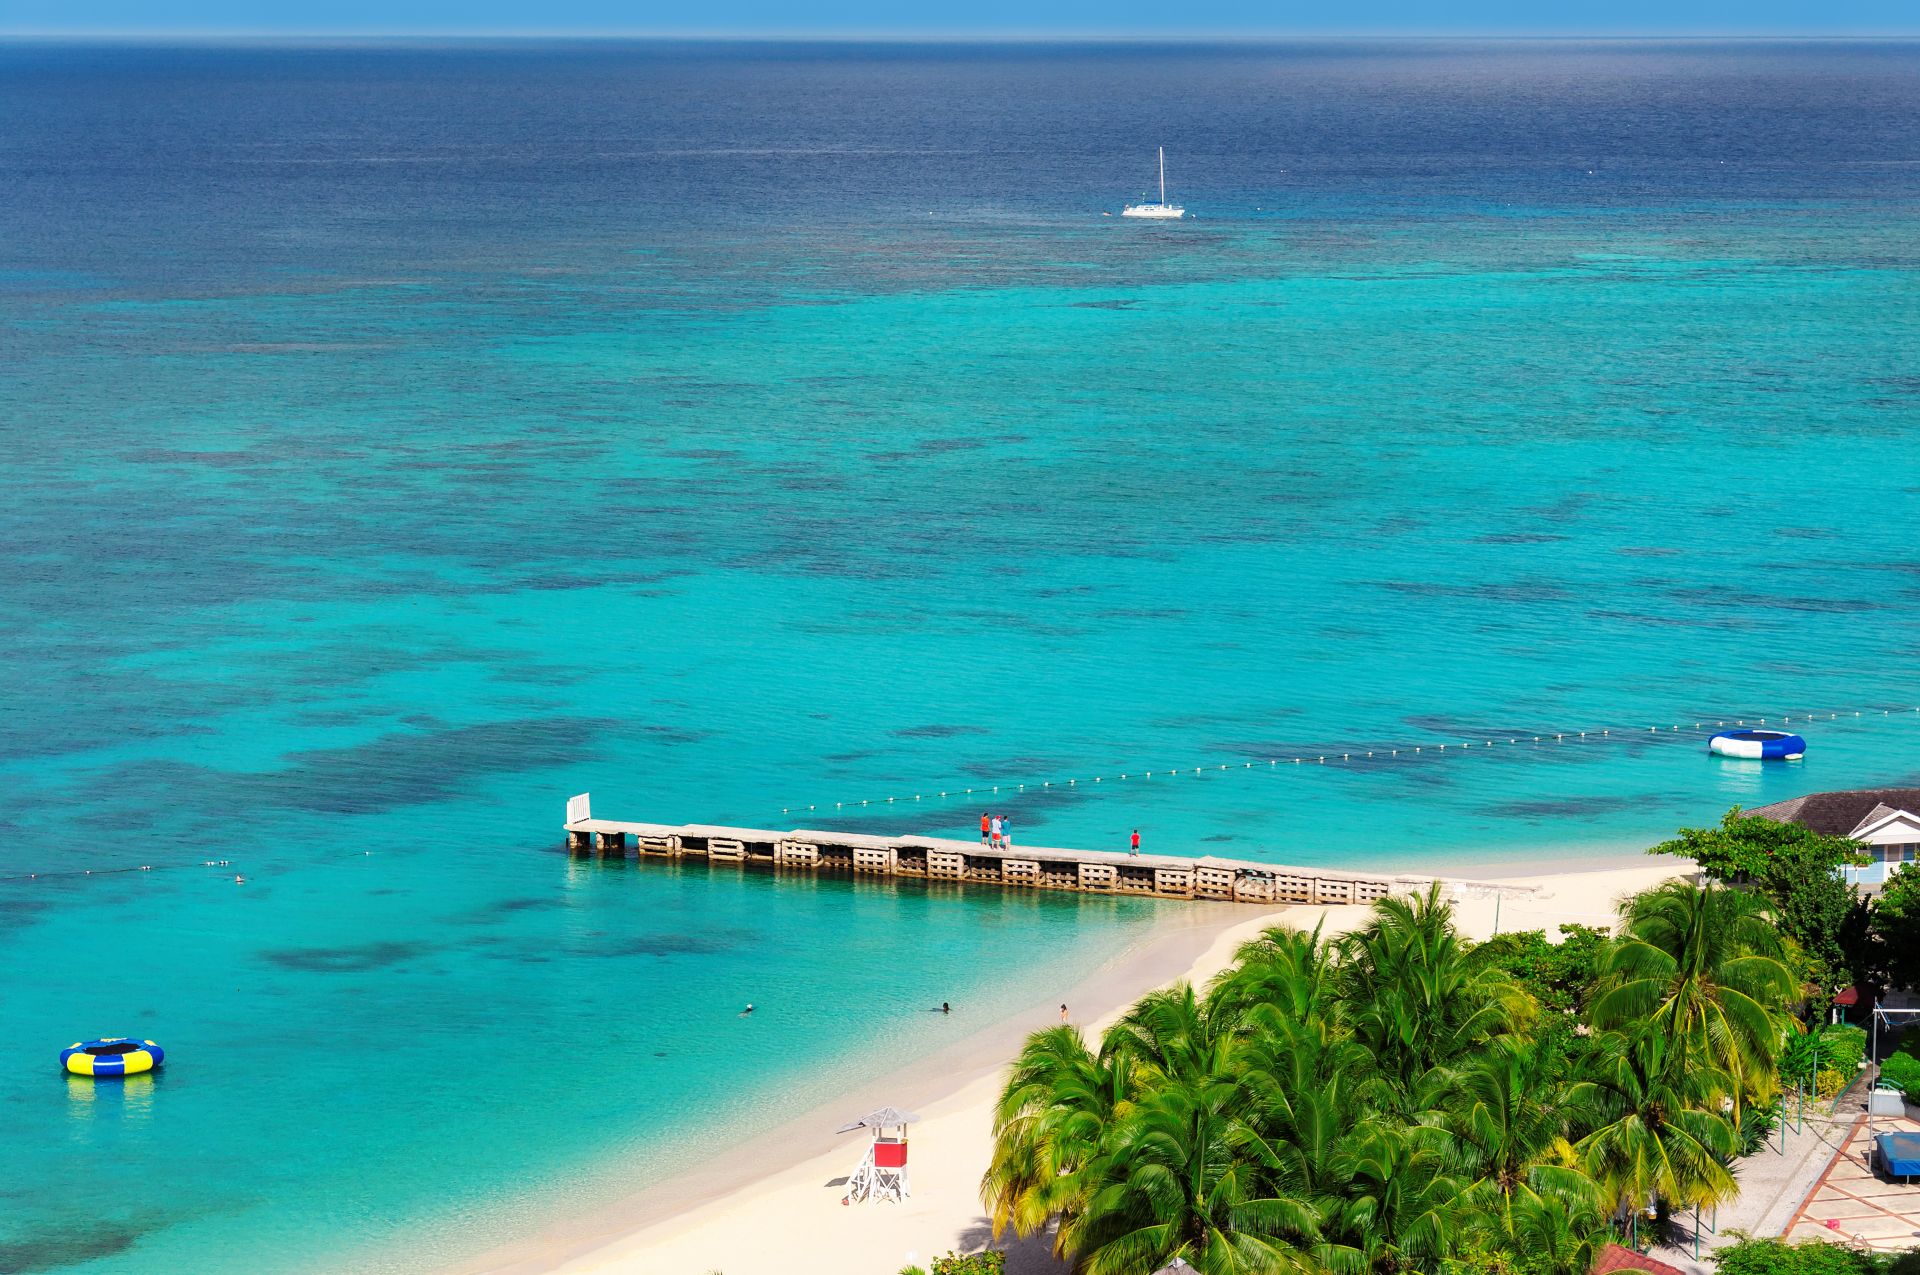 Vista aerea della bellissima spiaggia caraibica e del molo